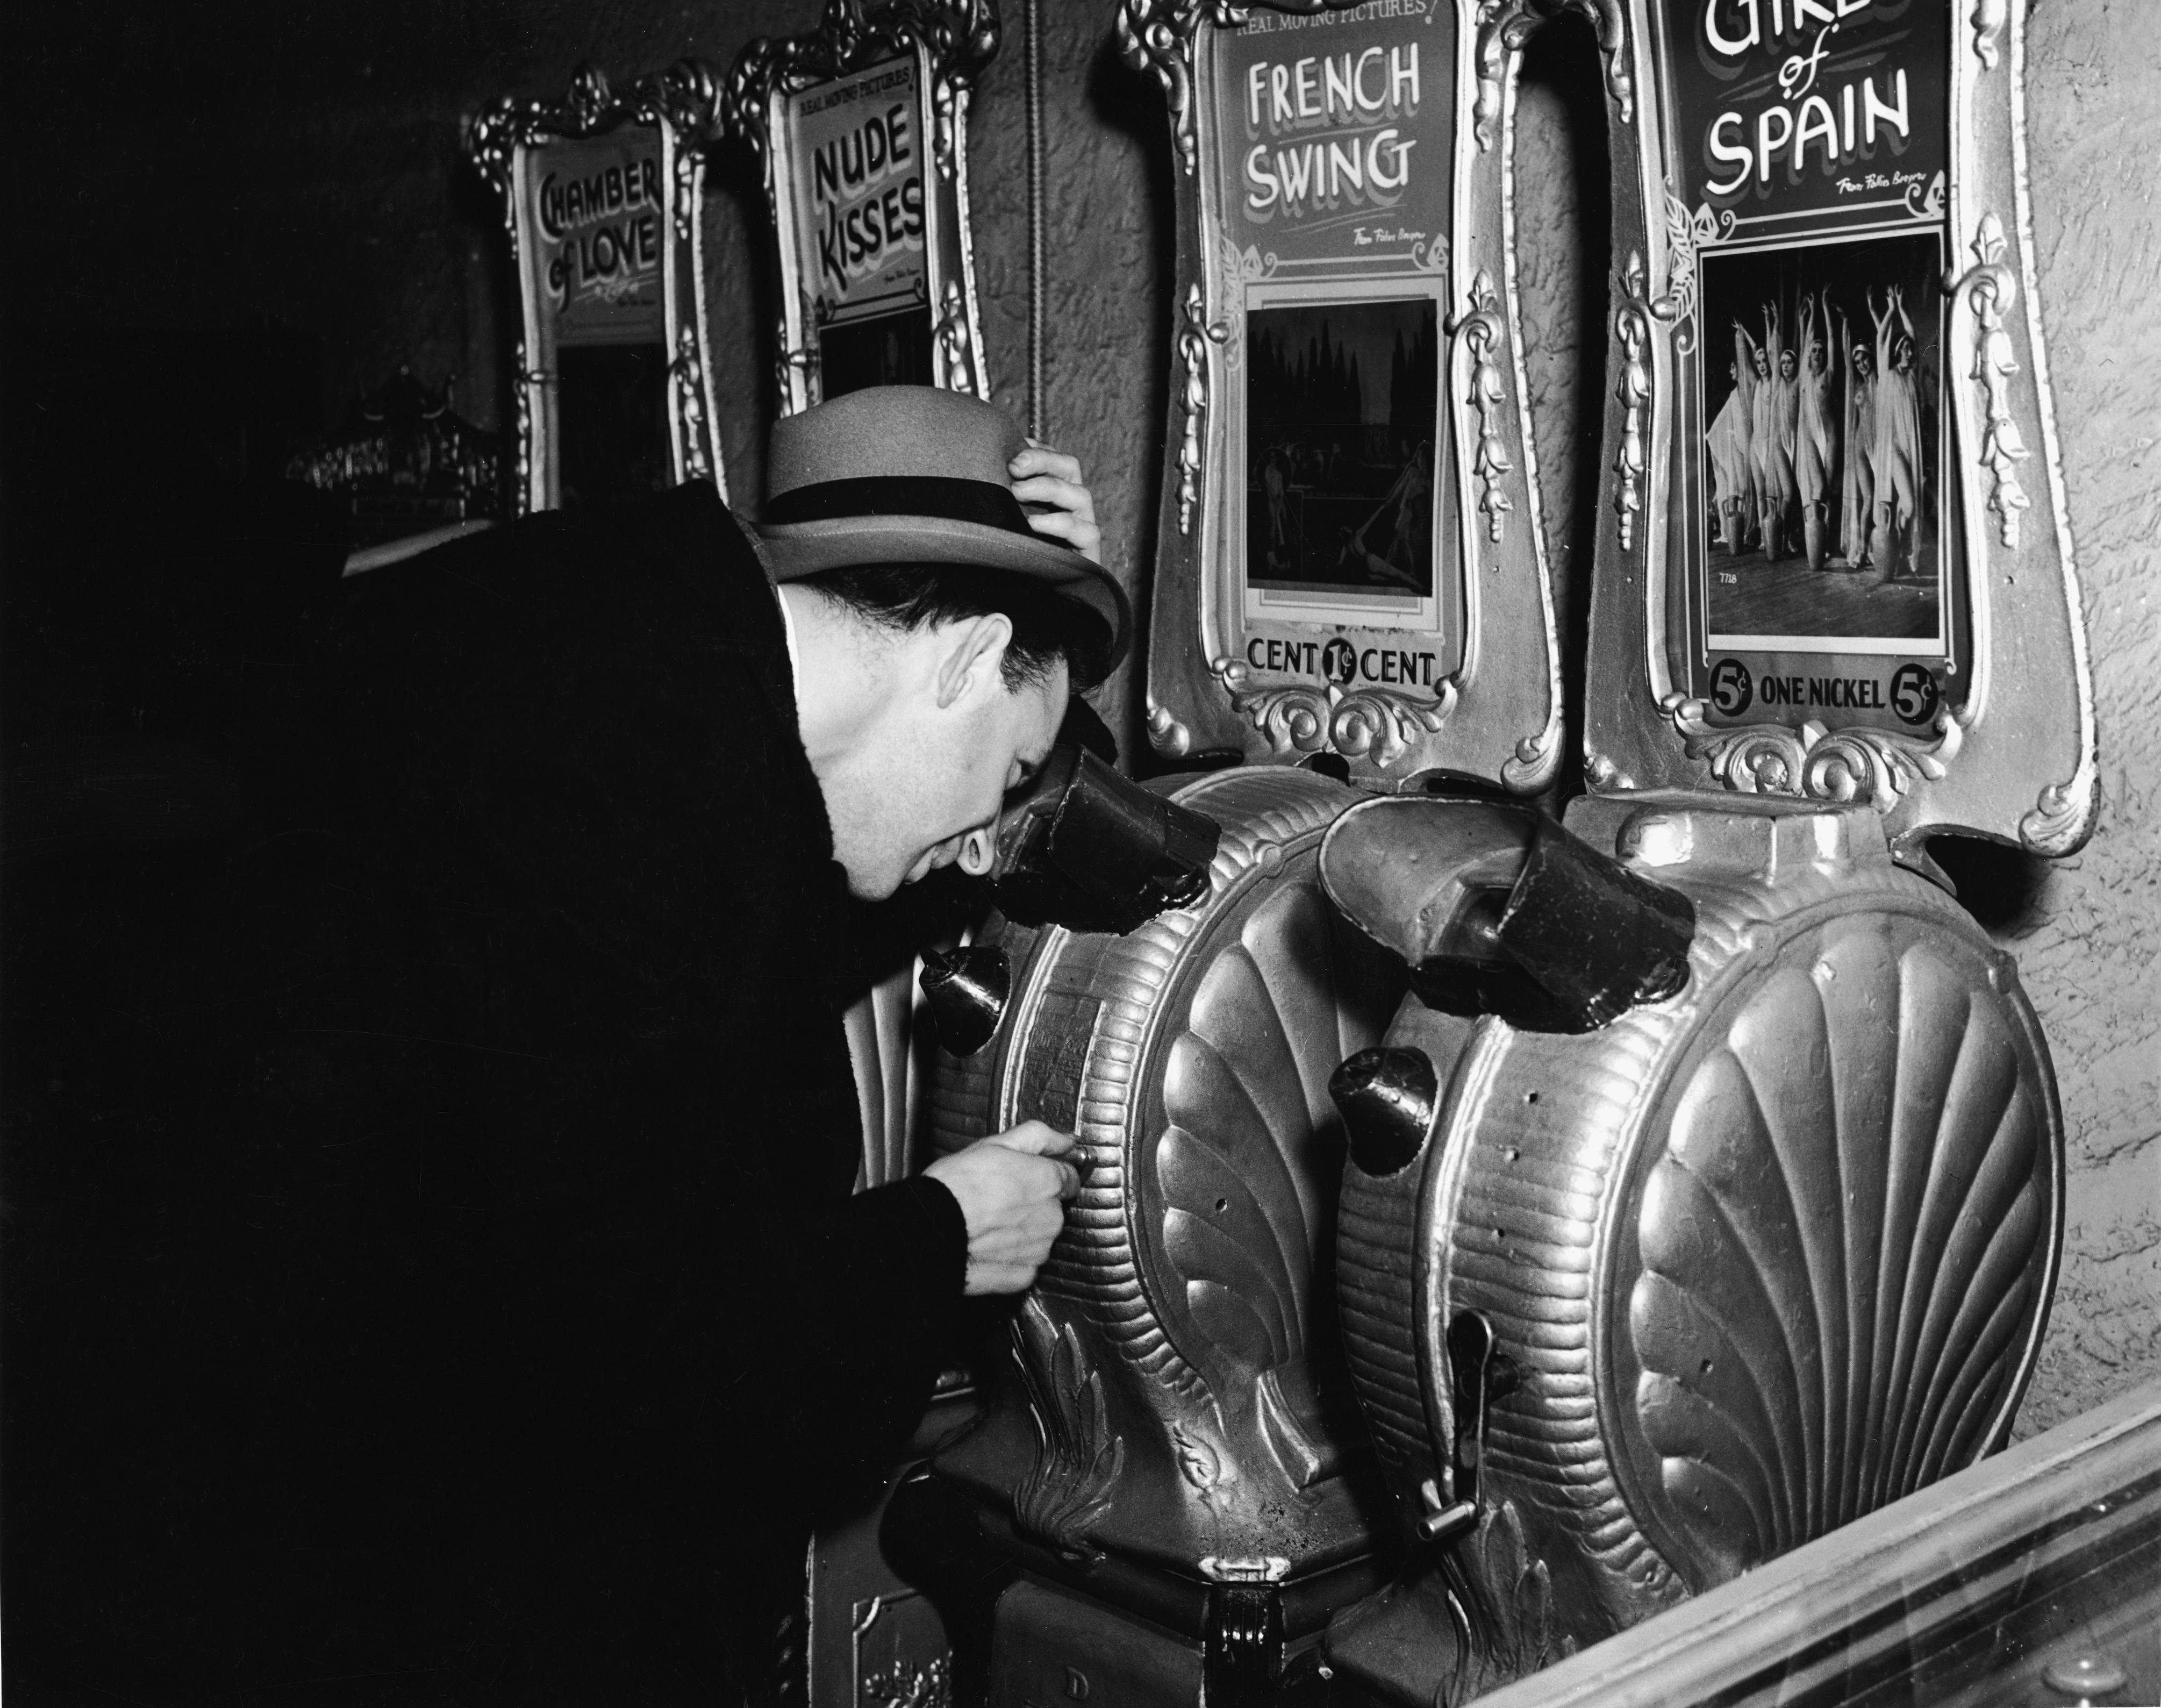 1940s-erotic-peep-show-machines